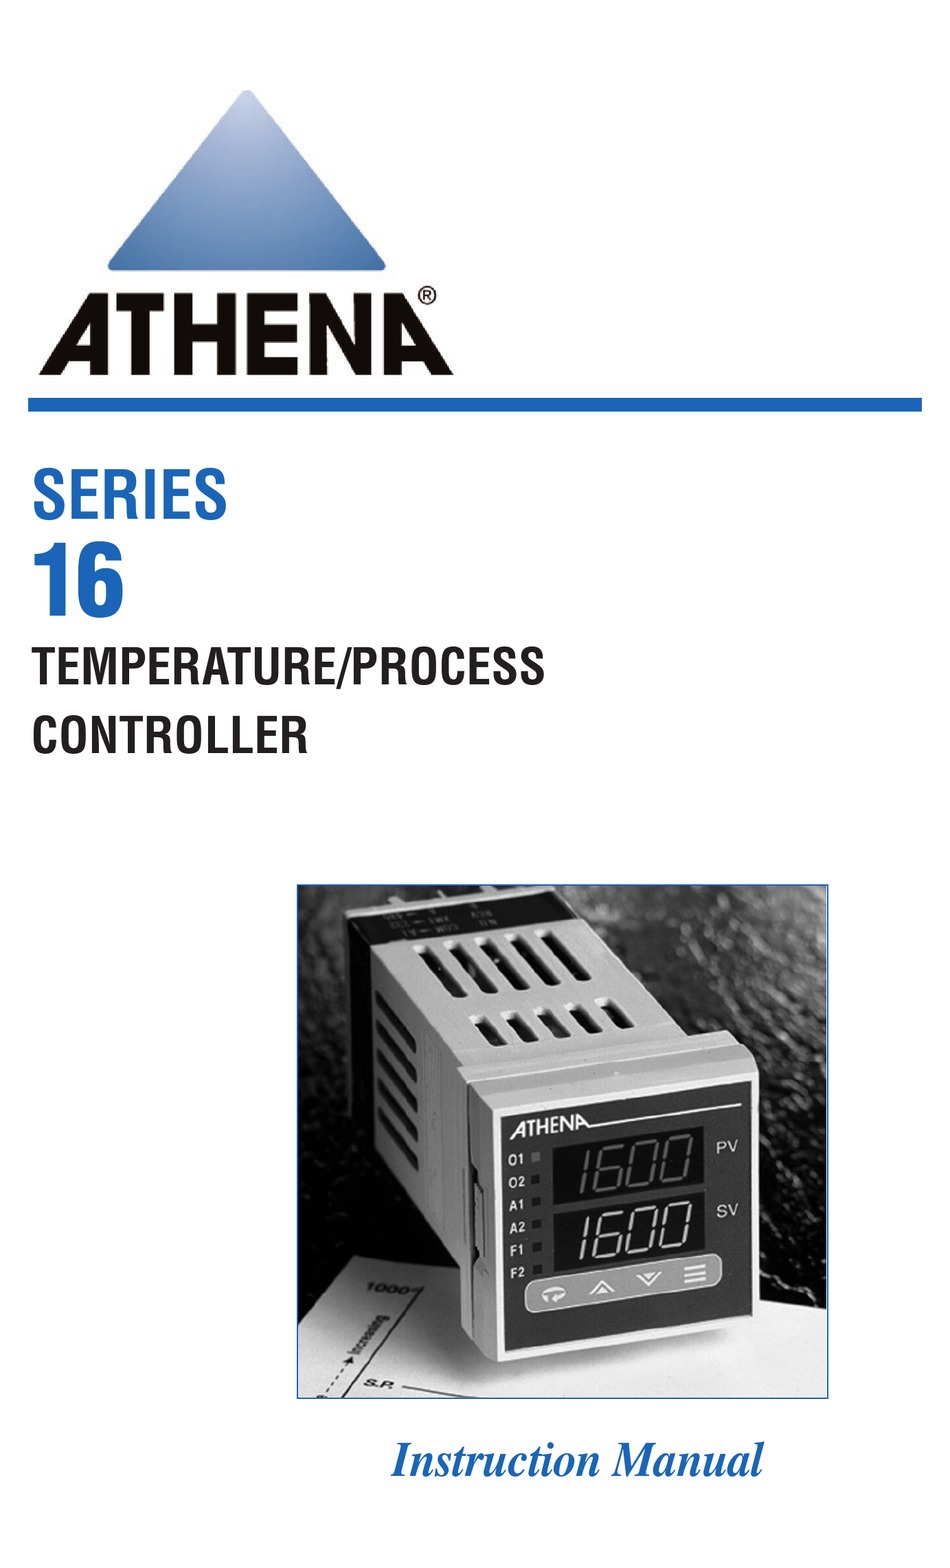 Details about   ATHENA 16JFS010-00 TEMPERATURE/PROCESS CONTROLLER  *NEW* 